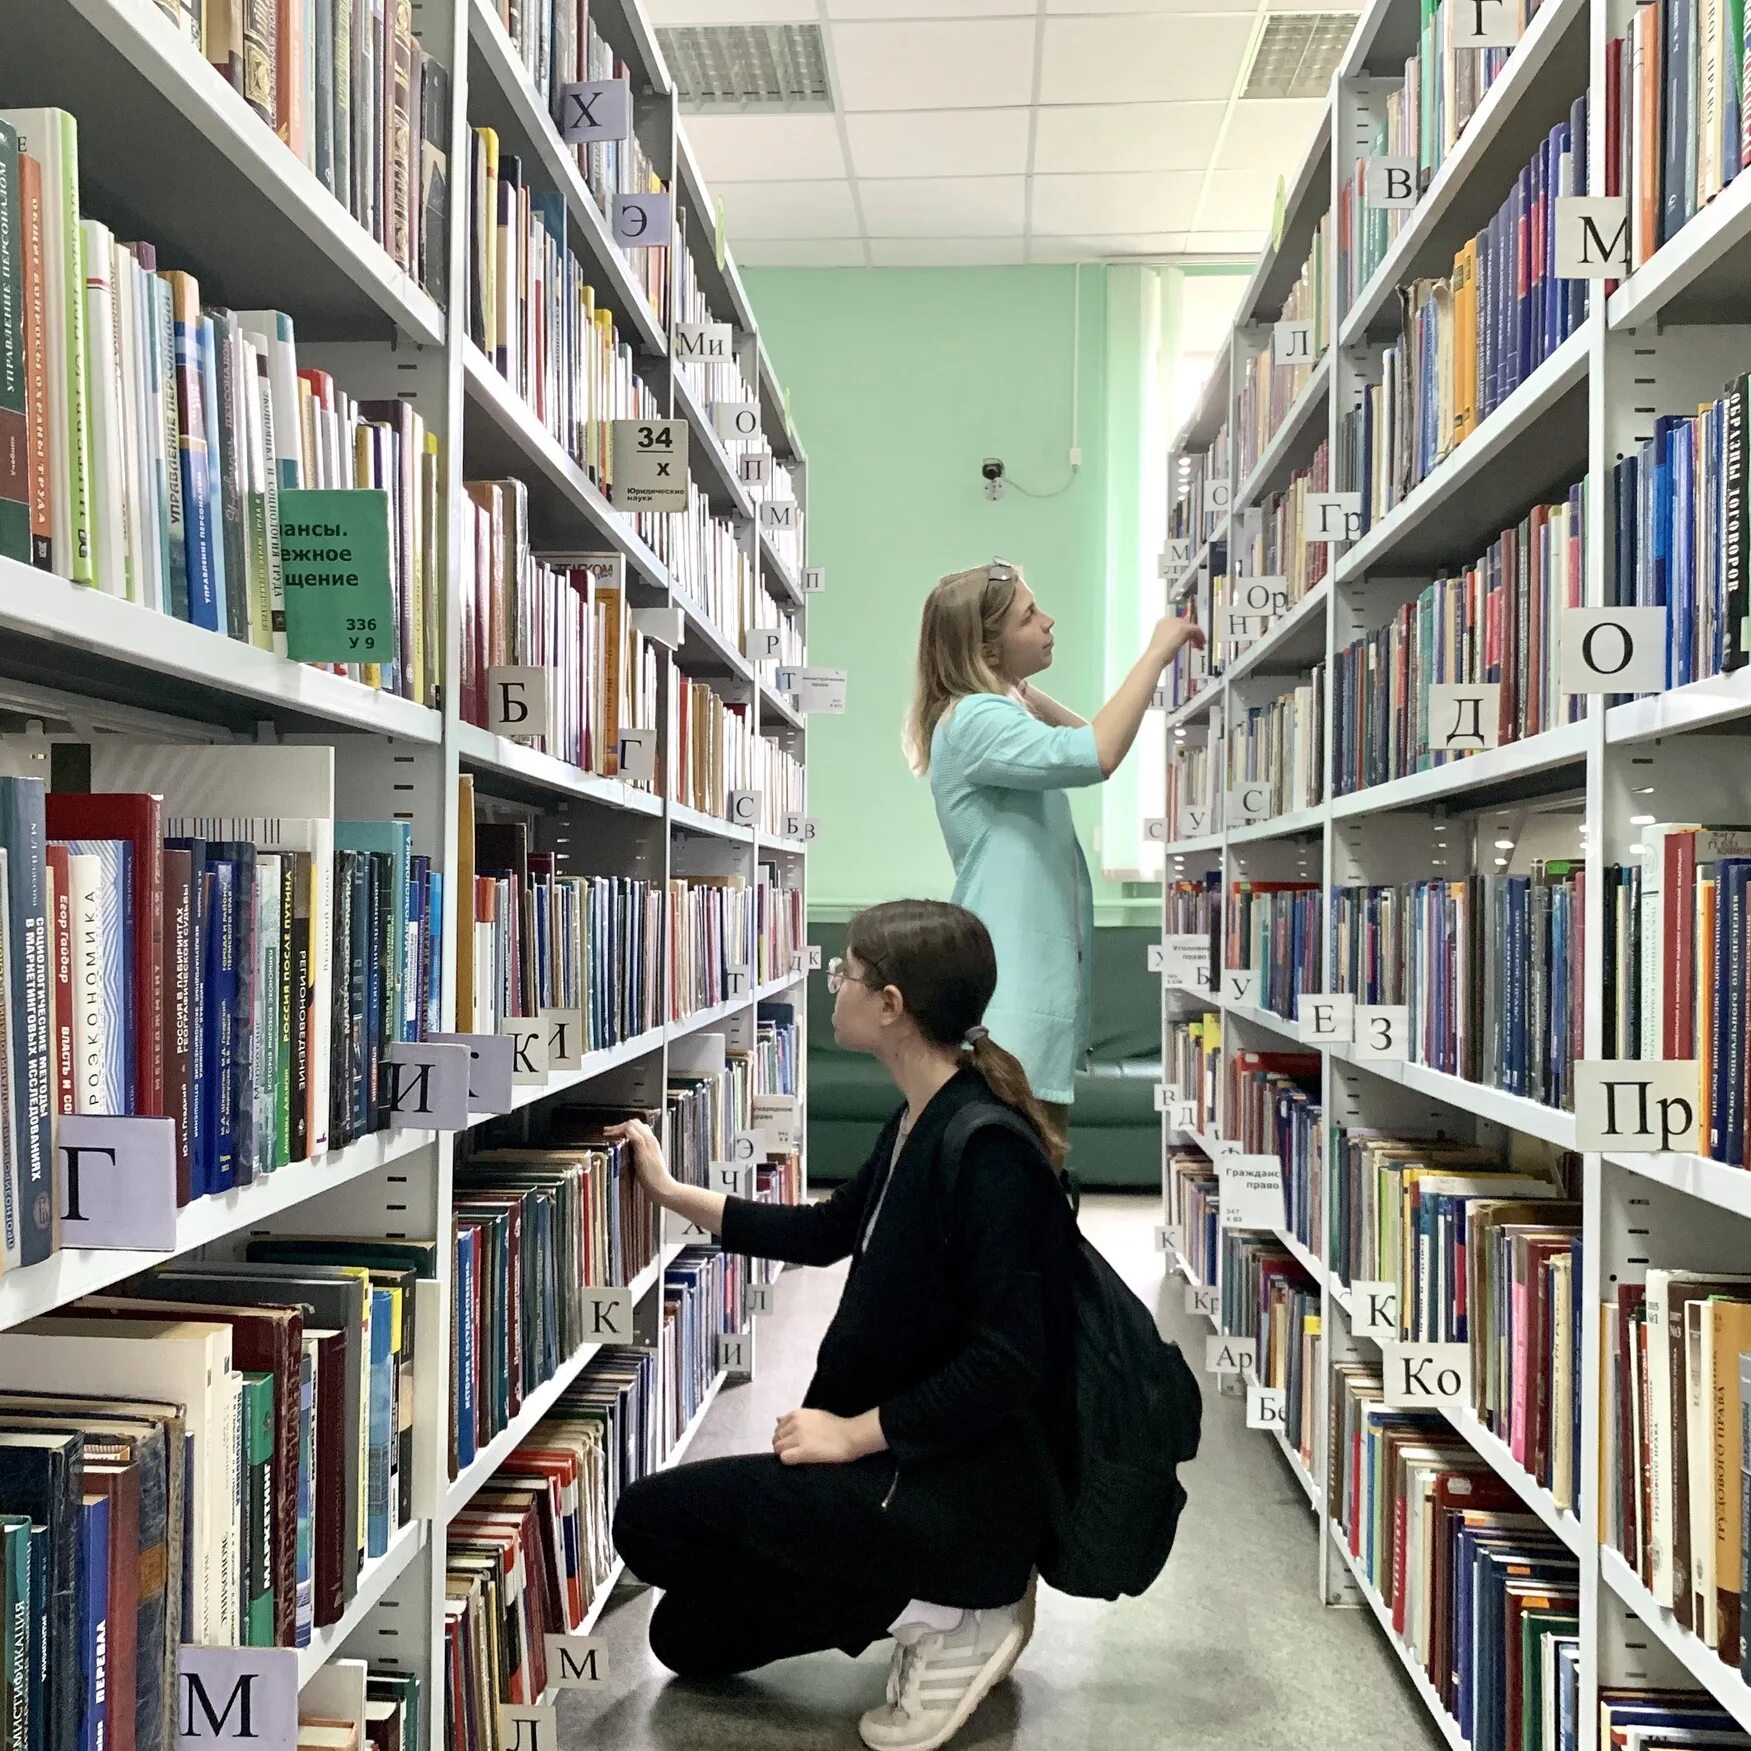 Picture library. Научная библиотека ПГНИУ. Читатели в библиотеке. Зал библиотеки.